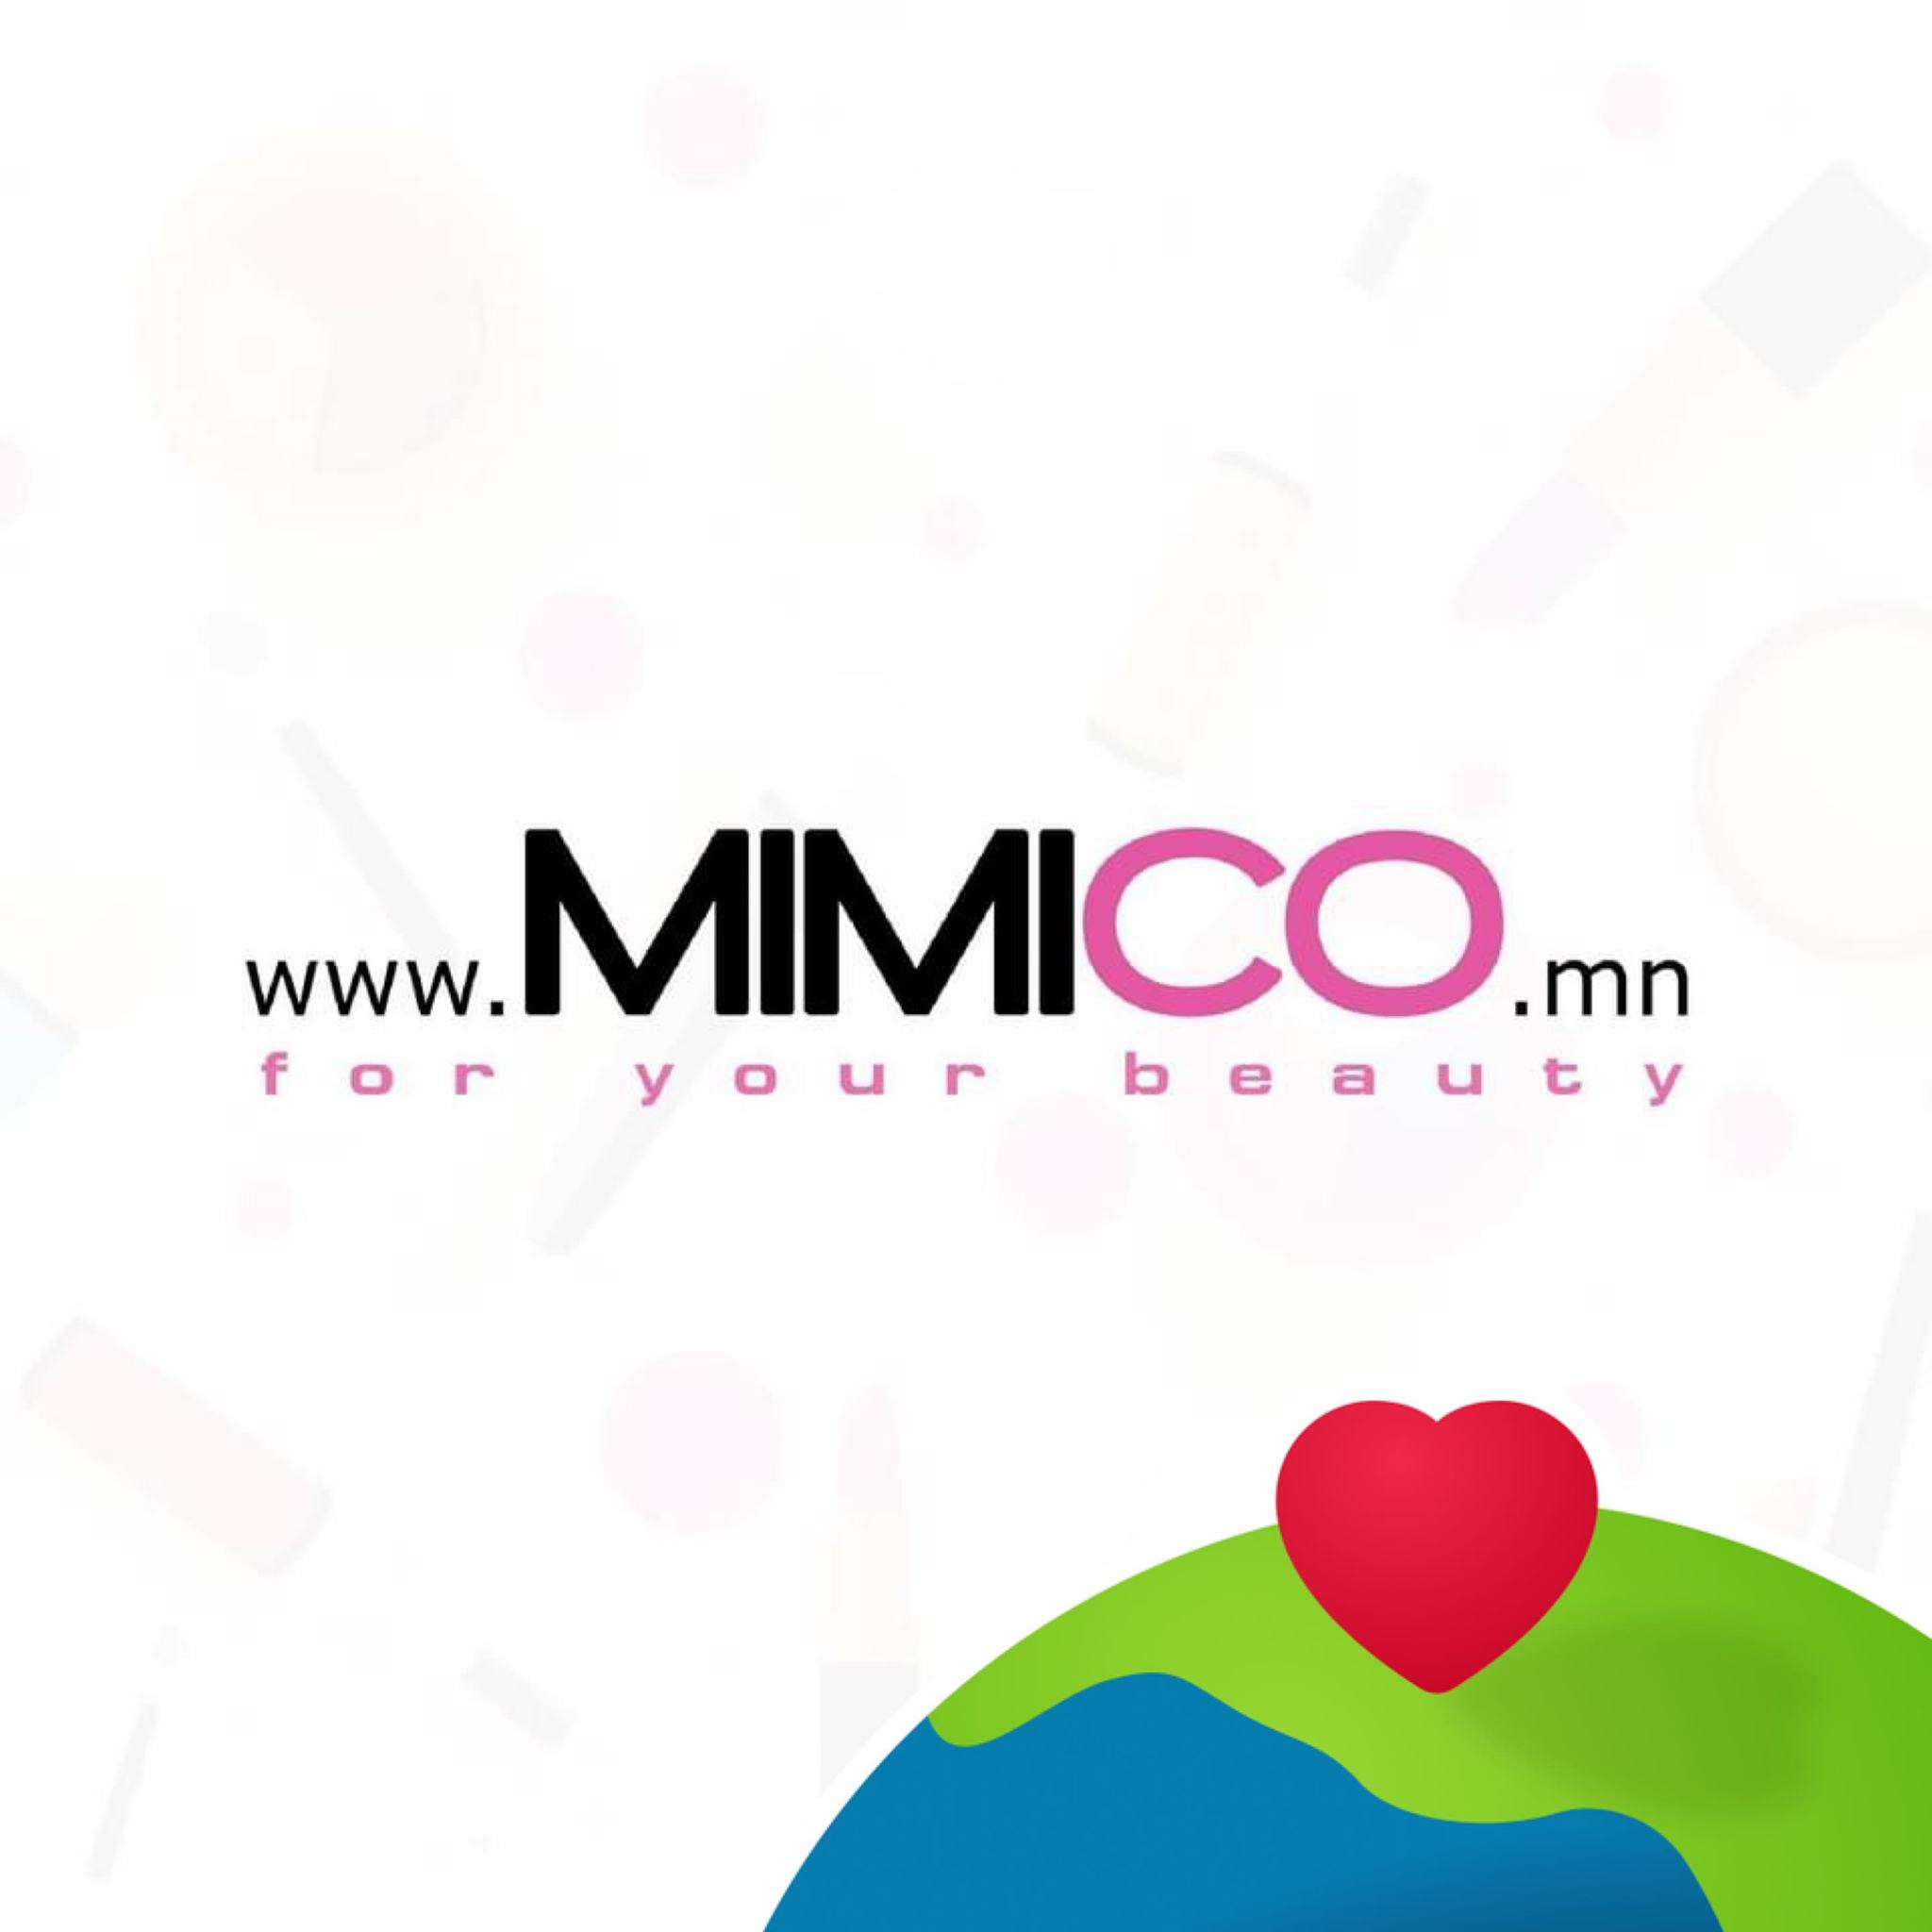 Mimico.mn Mongolia 